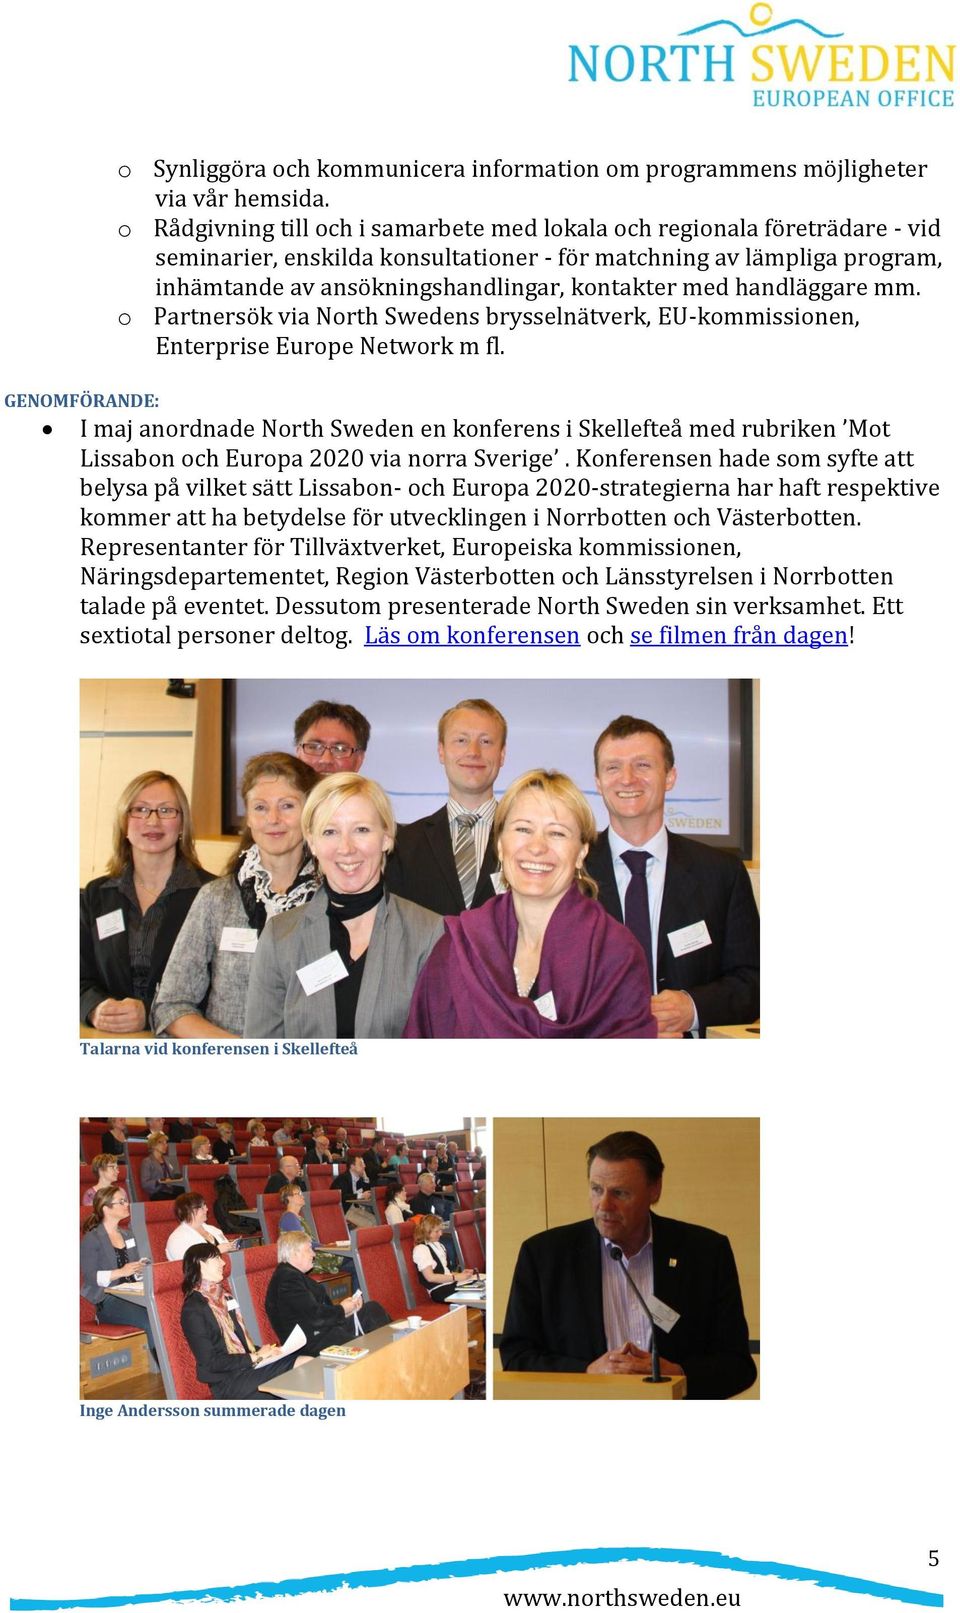 handläggare mm. o Partnersök via North Swedens brysselnätverk, EU-kommissionen, Enterprise Europe Network m fl.